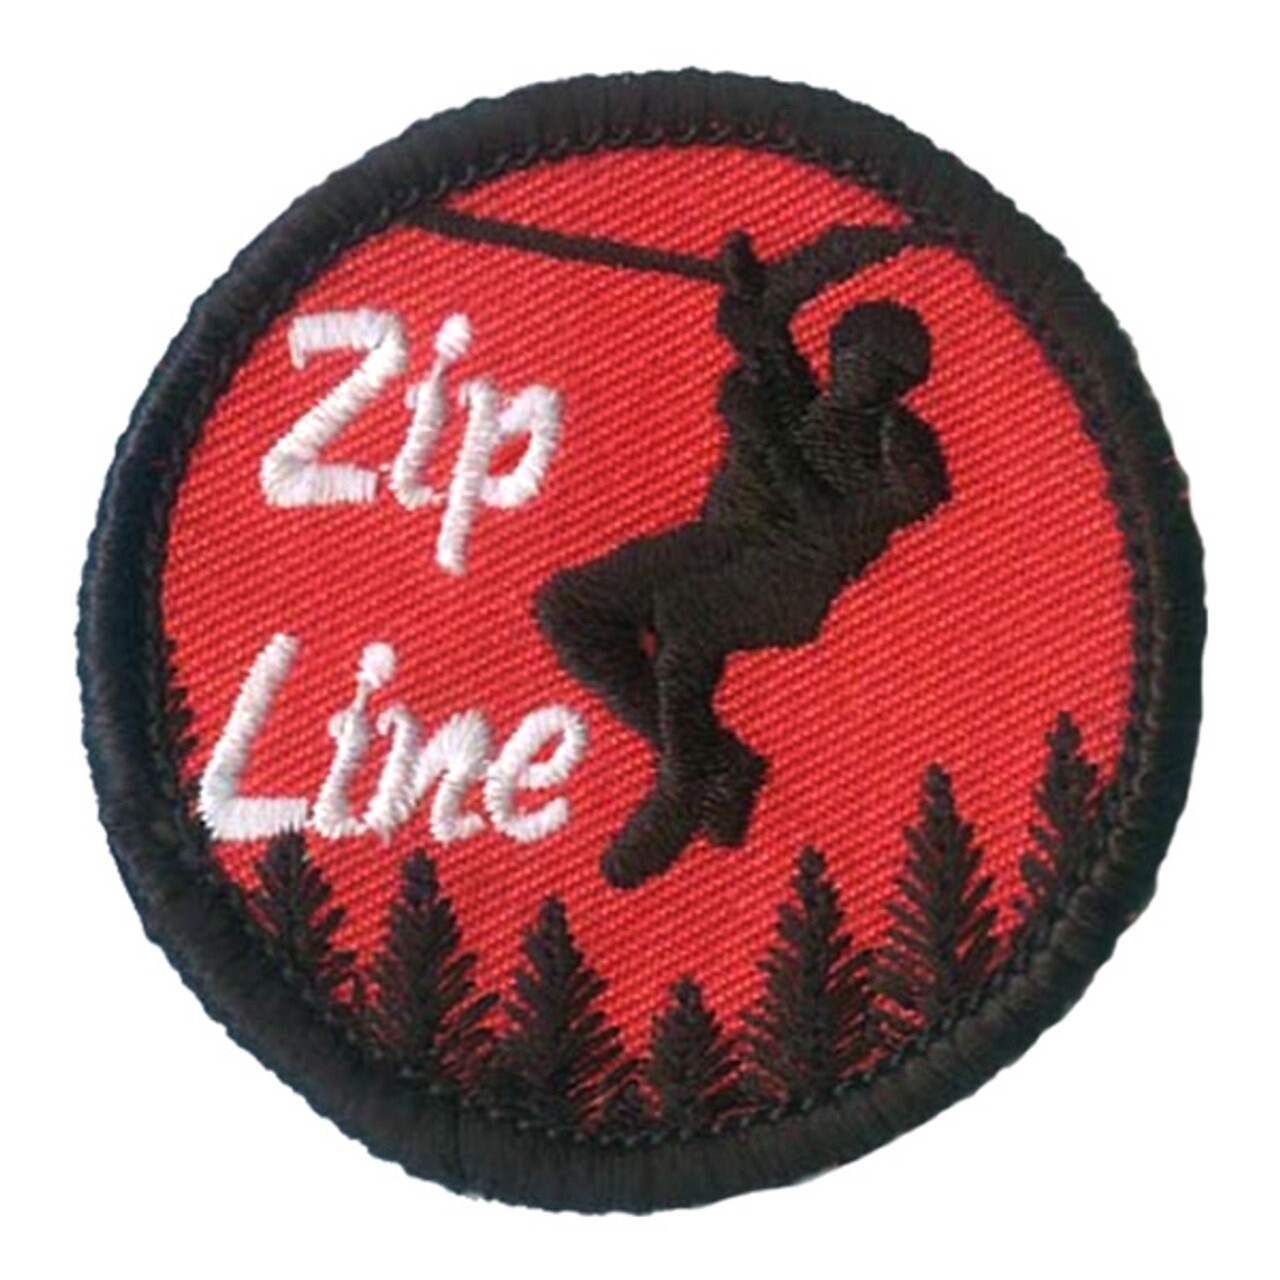 Zip Line Patch